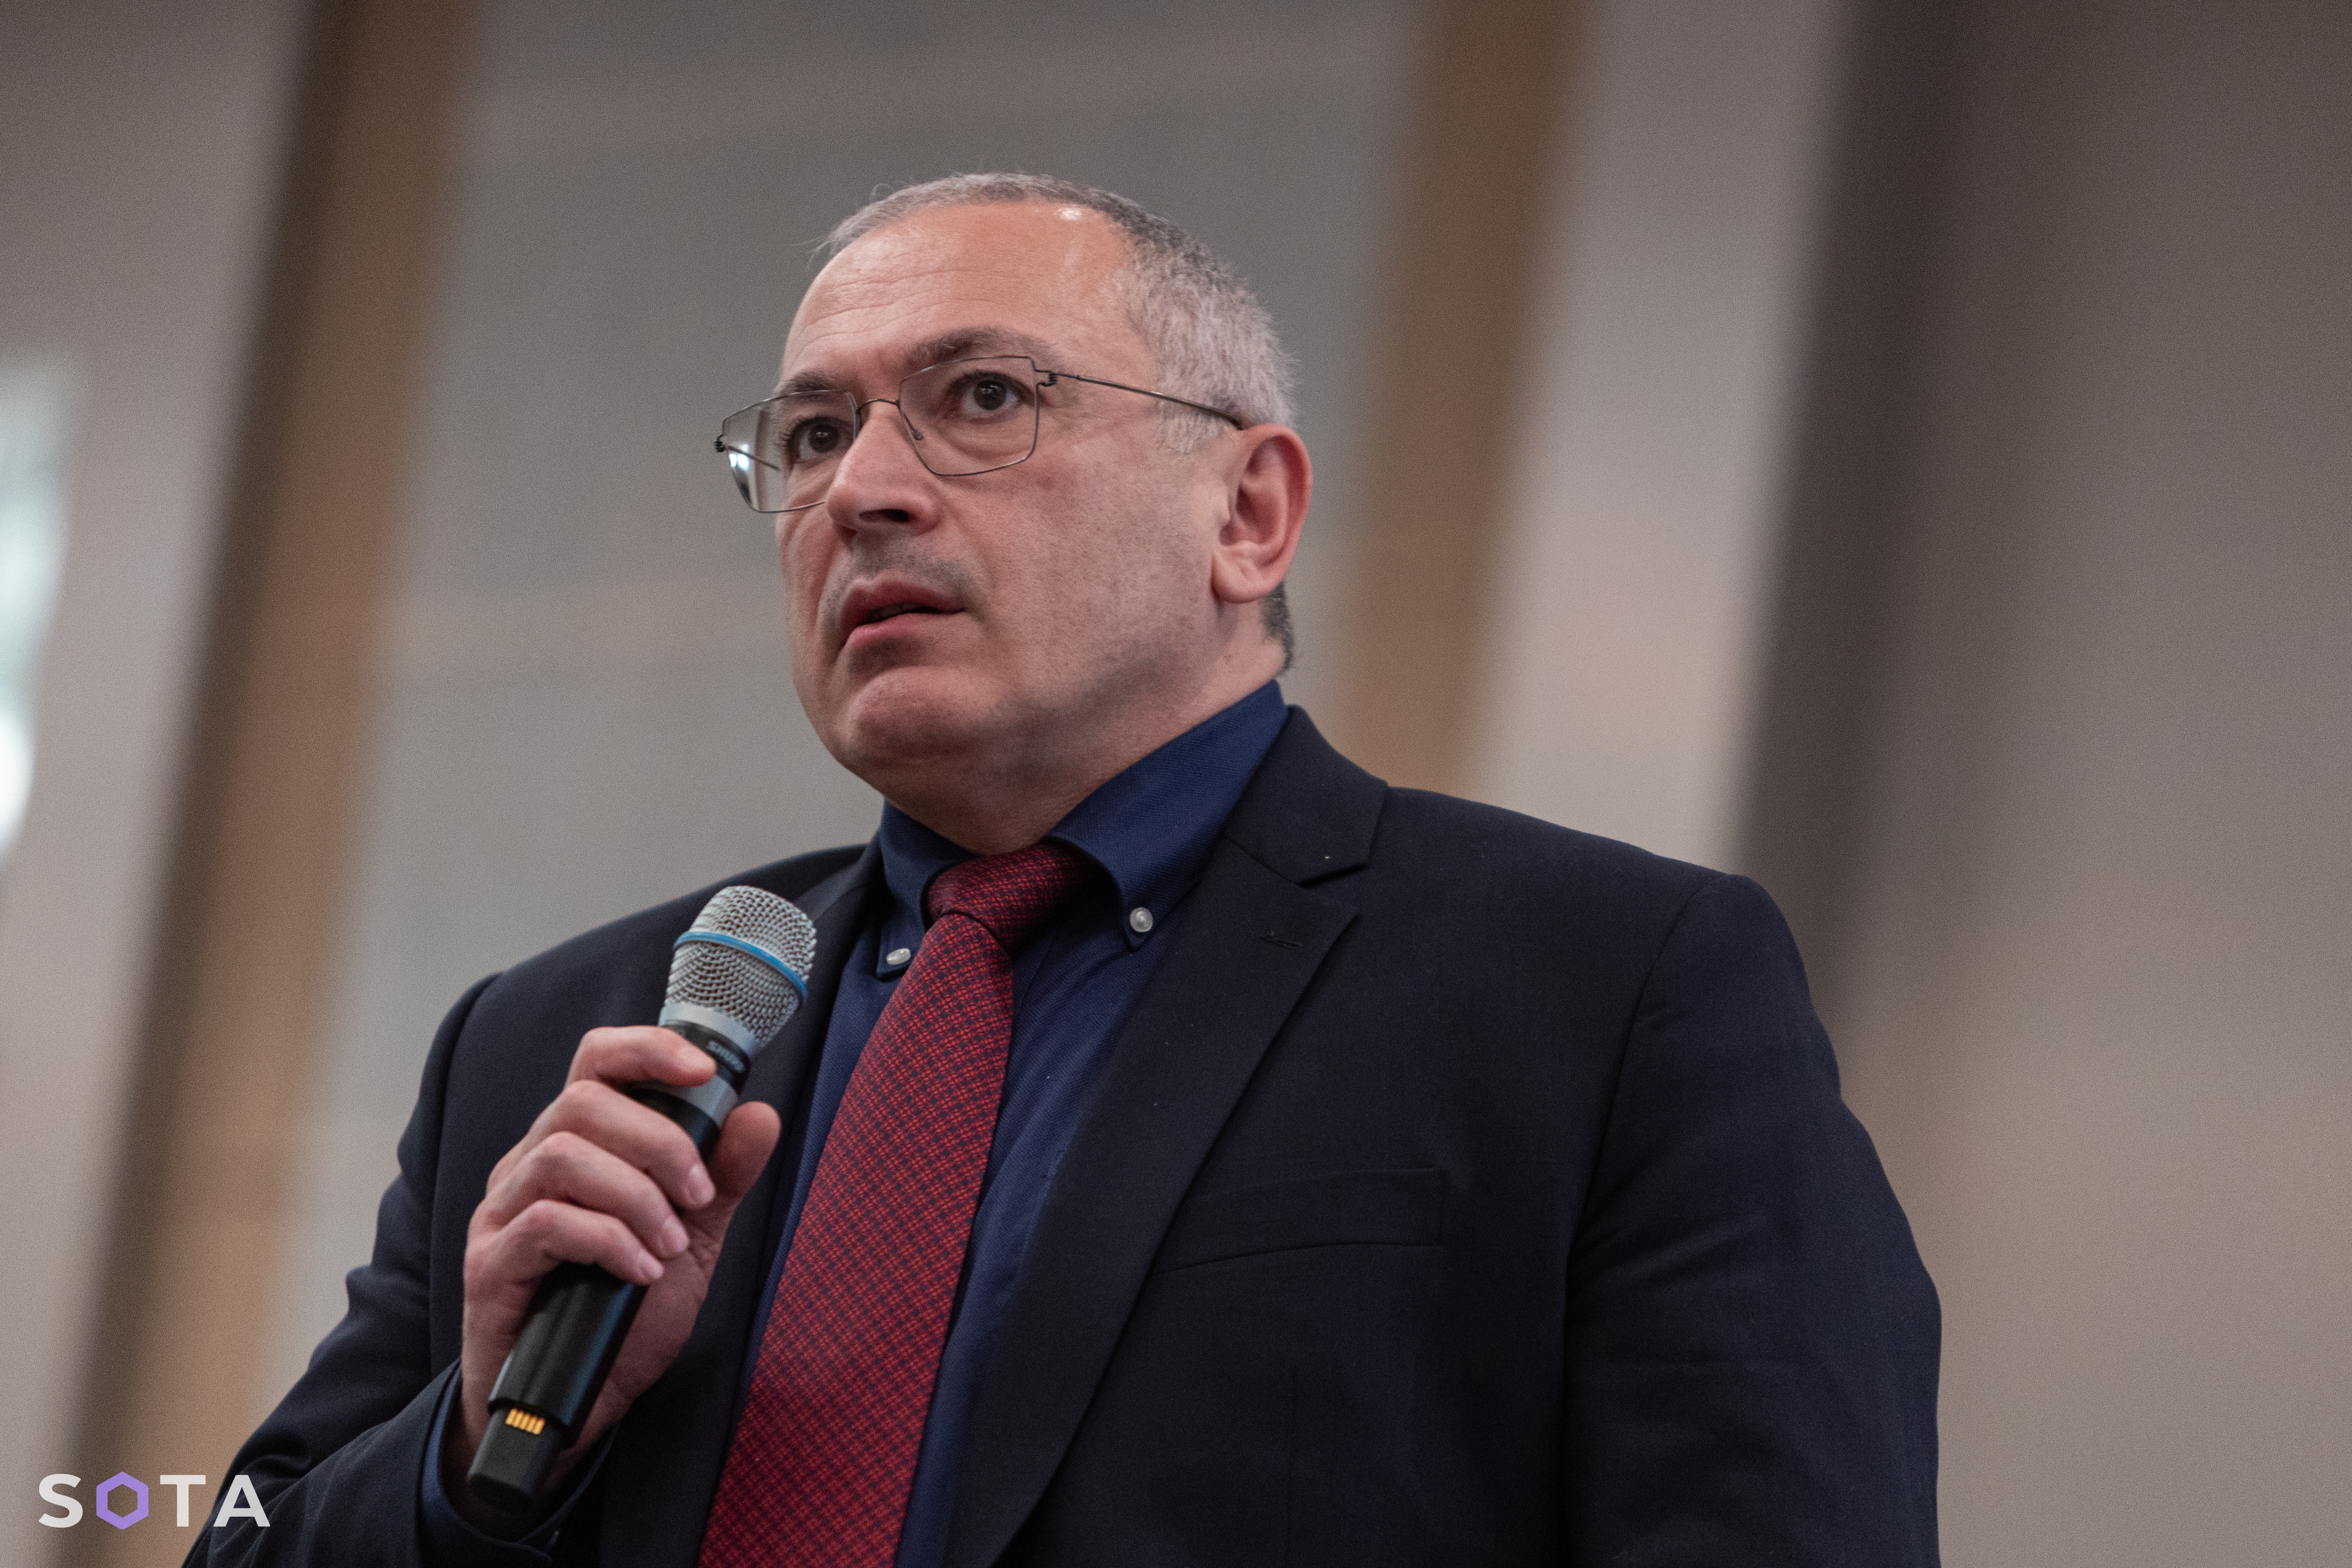 Михаил Ходорковский на съезде.
Фото: Руслан Терехов / SOTA